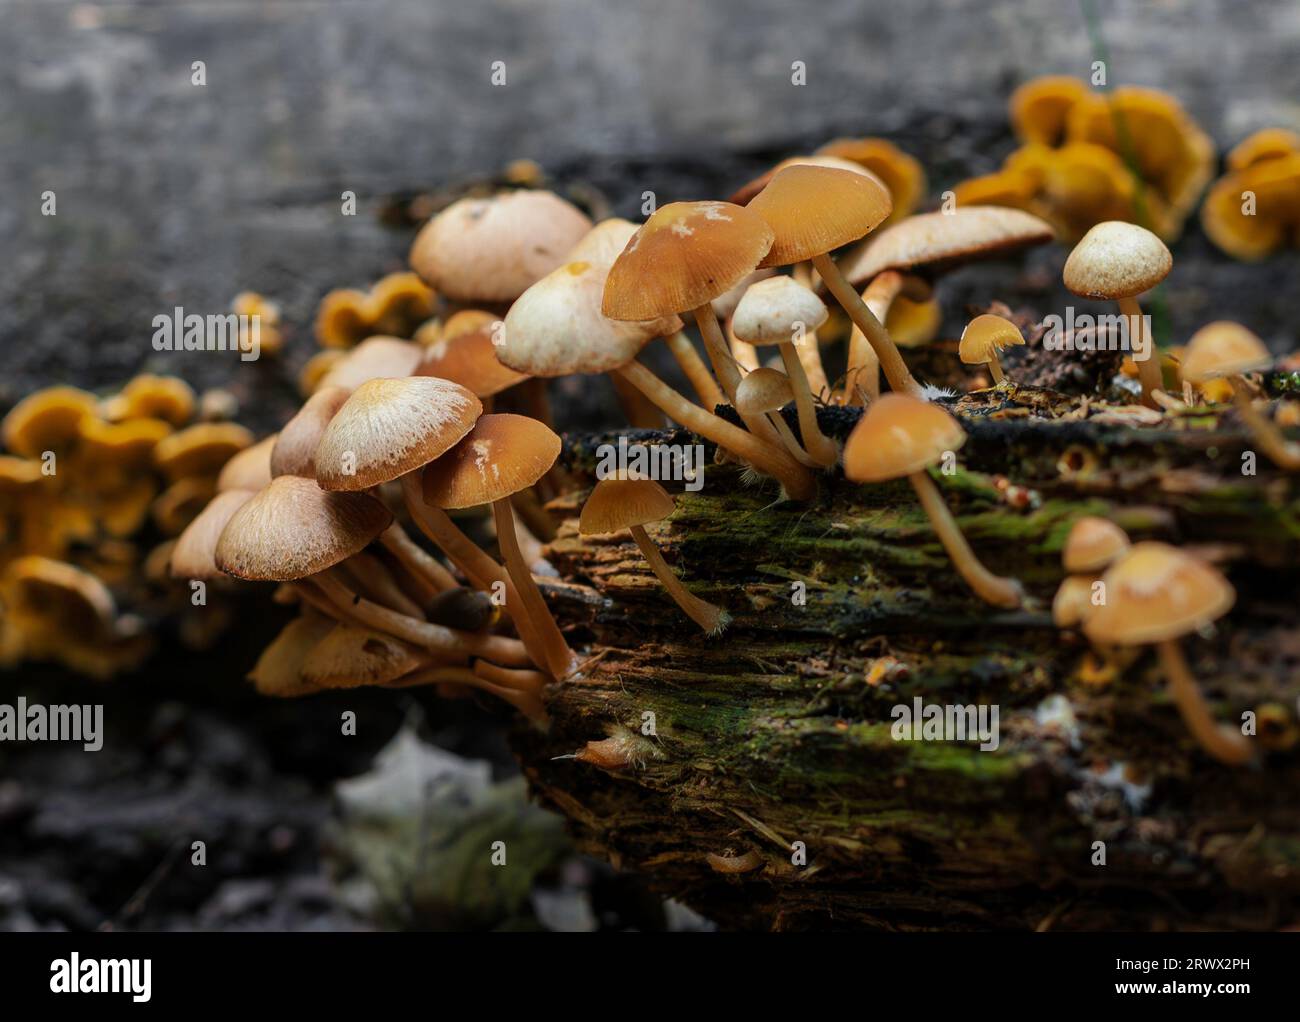 Hymenogastraceae mushrooms on rotting wood Stock Photo